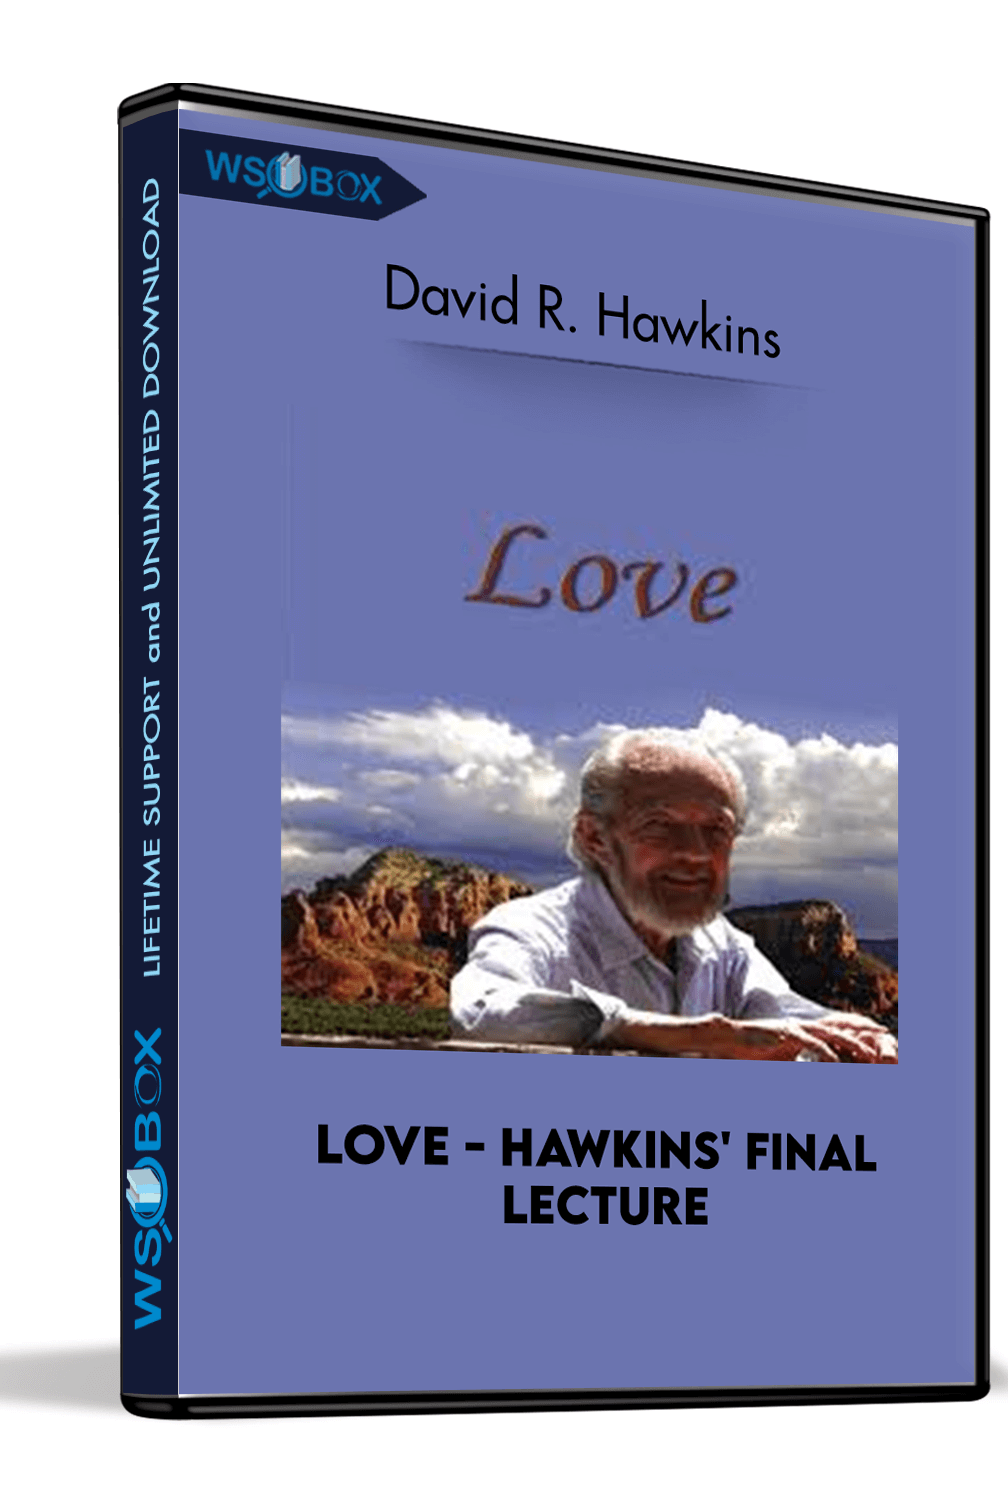 Love – Hawkins’ Final Lecture – David R. Hawkins